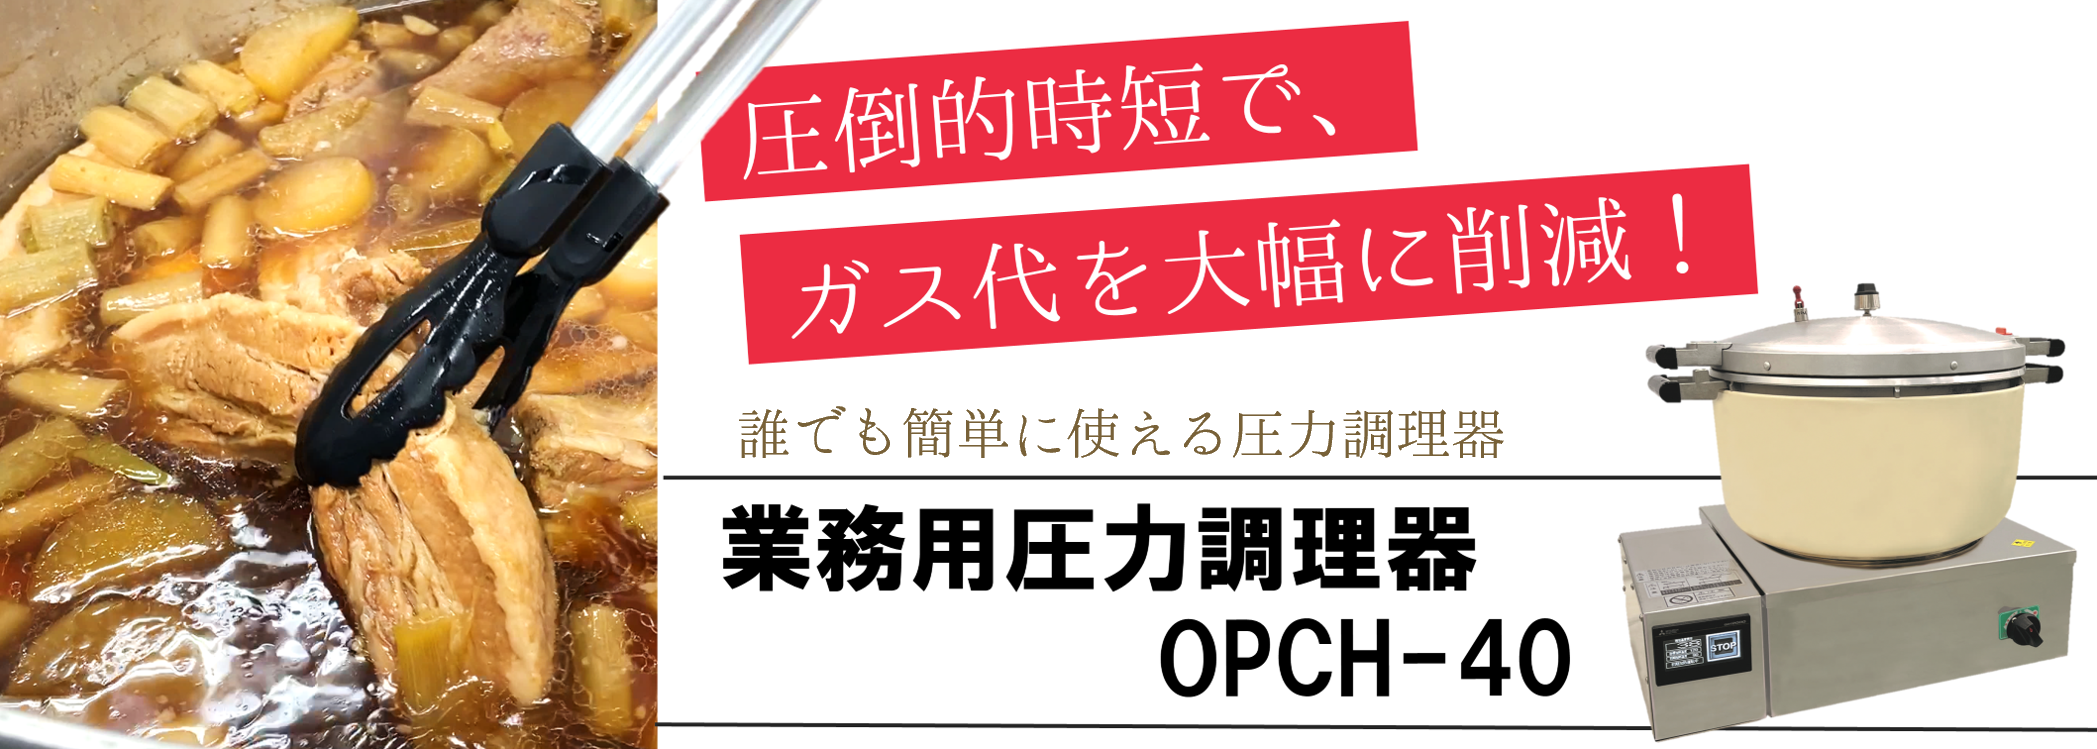 圧力調理器 OPCH-40